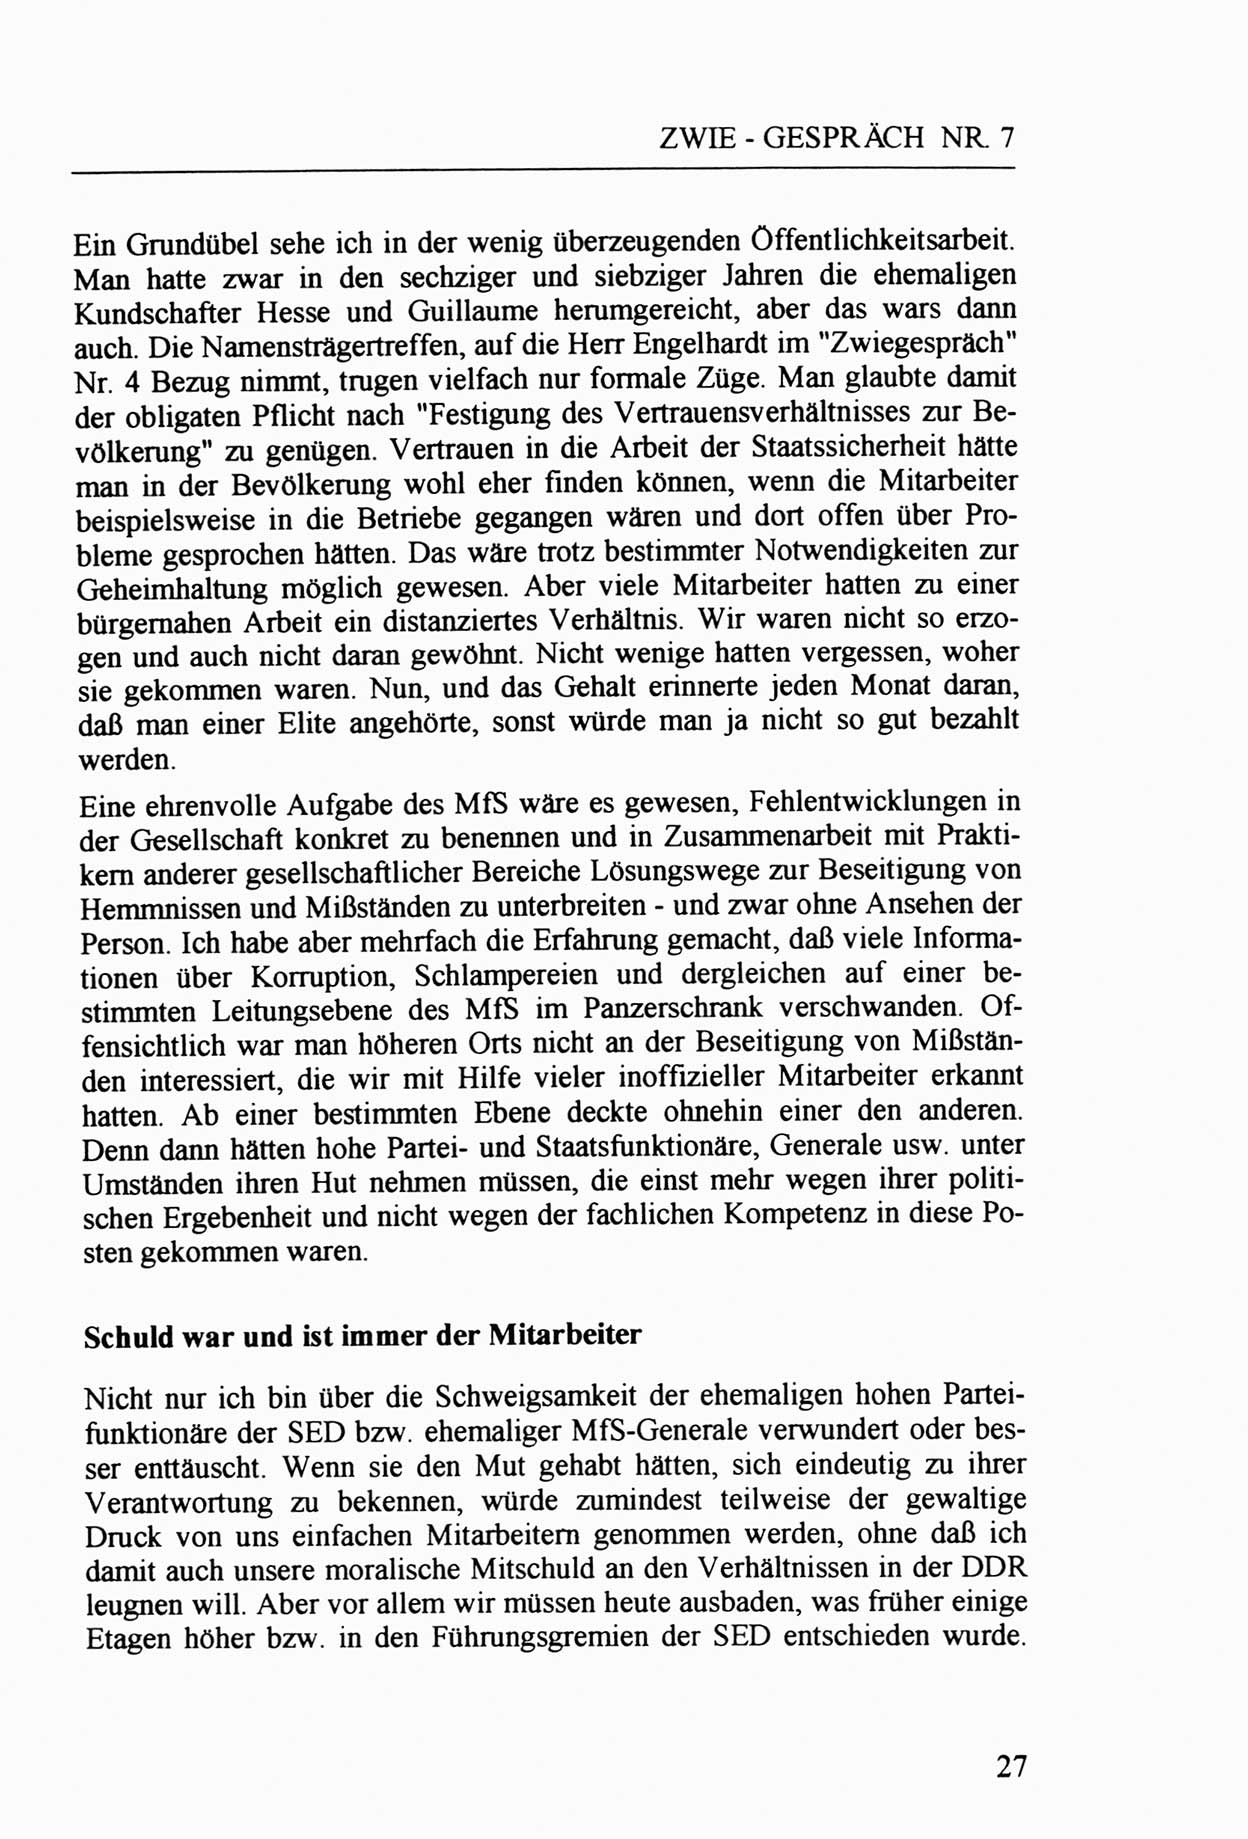 Zwie-Gespräch, Beiträge zur Aufarbeitung der Staatssicherheits-Vergangenheit [Deutsche Demokratische Republik (DDR)], Ausgabe Nr. 7, Berlin 1992, Seite 27 (Zwie-Gespr. Ausg. 7 1992, S. 27)